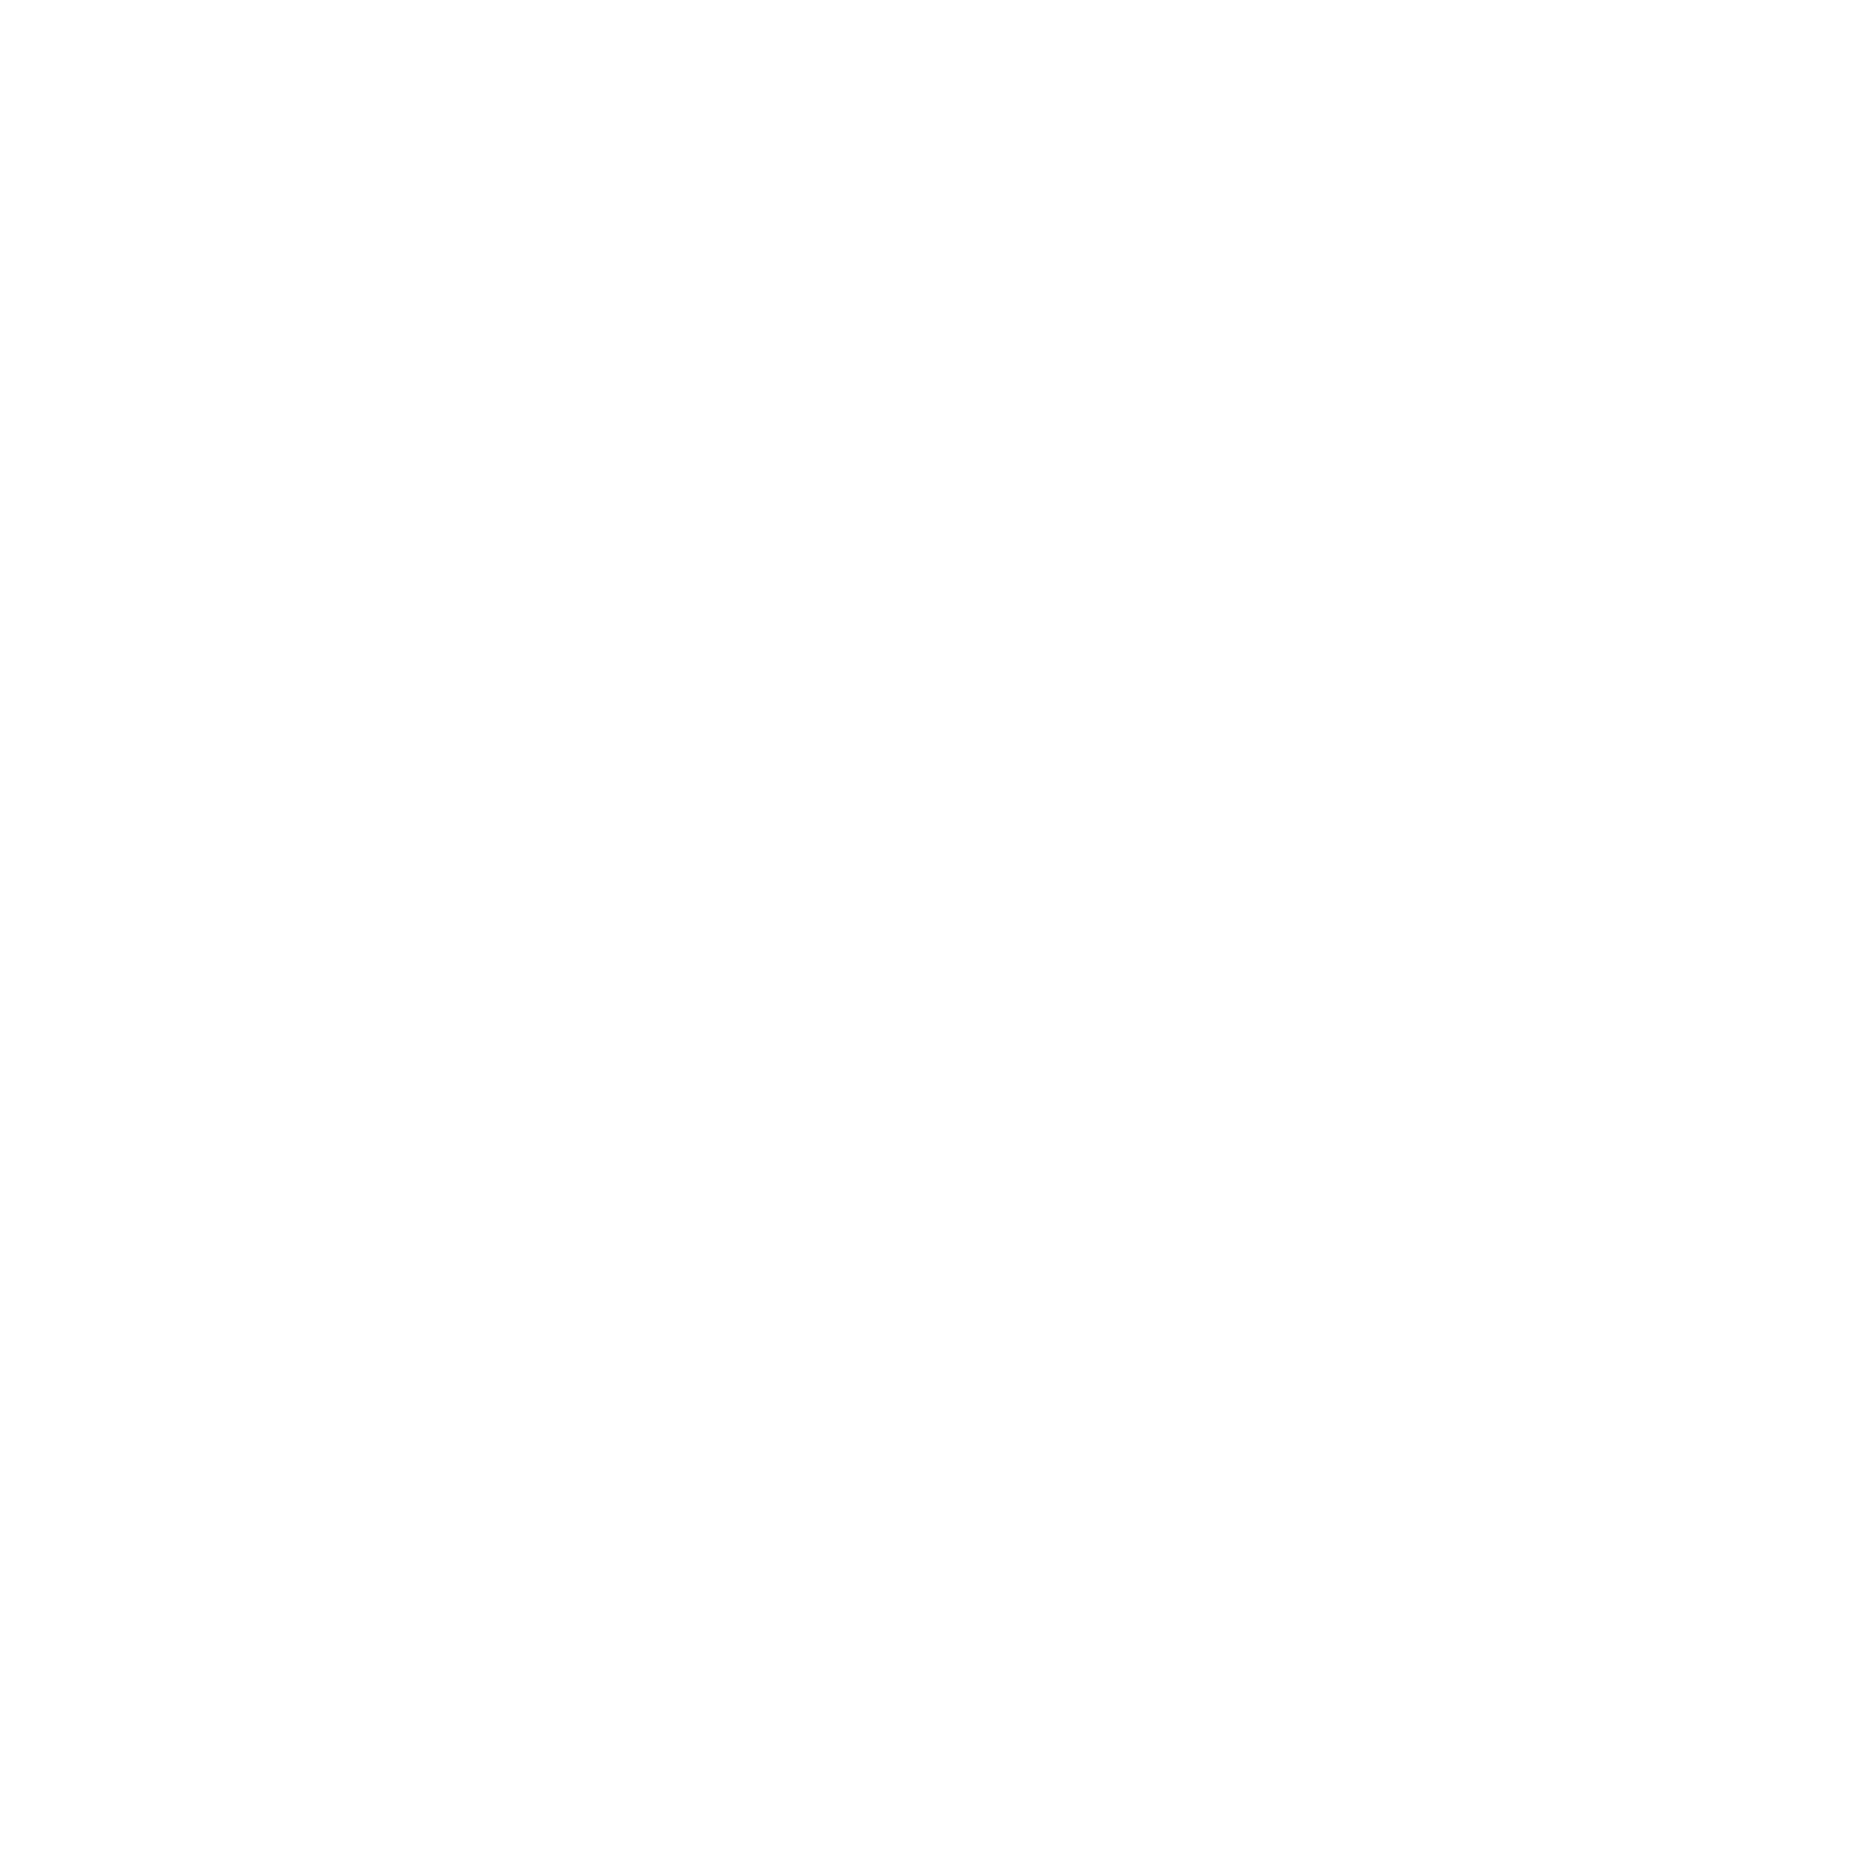 VIOW Isle of Wight logo white.